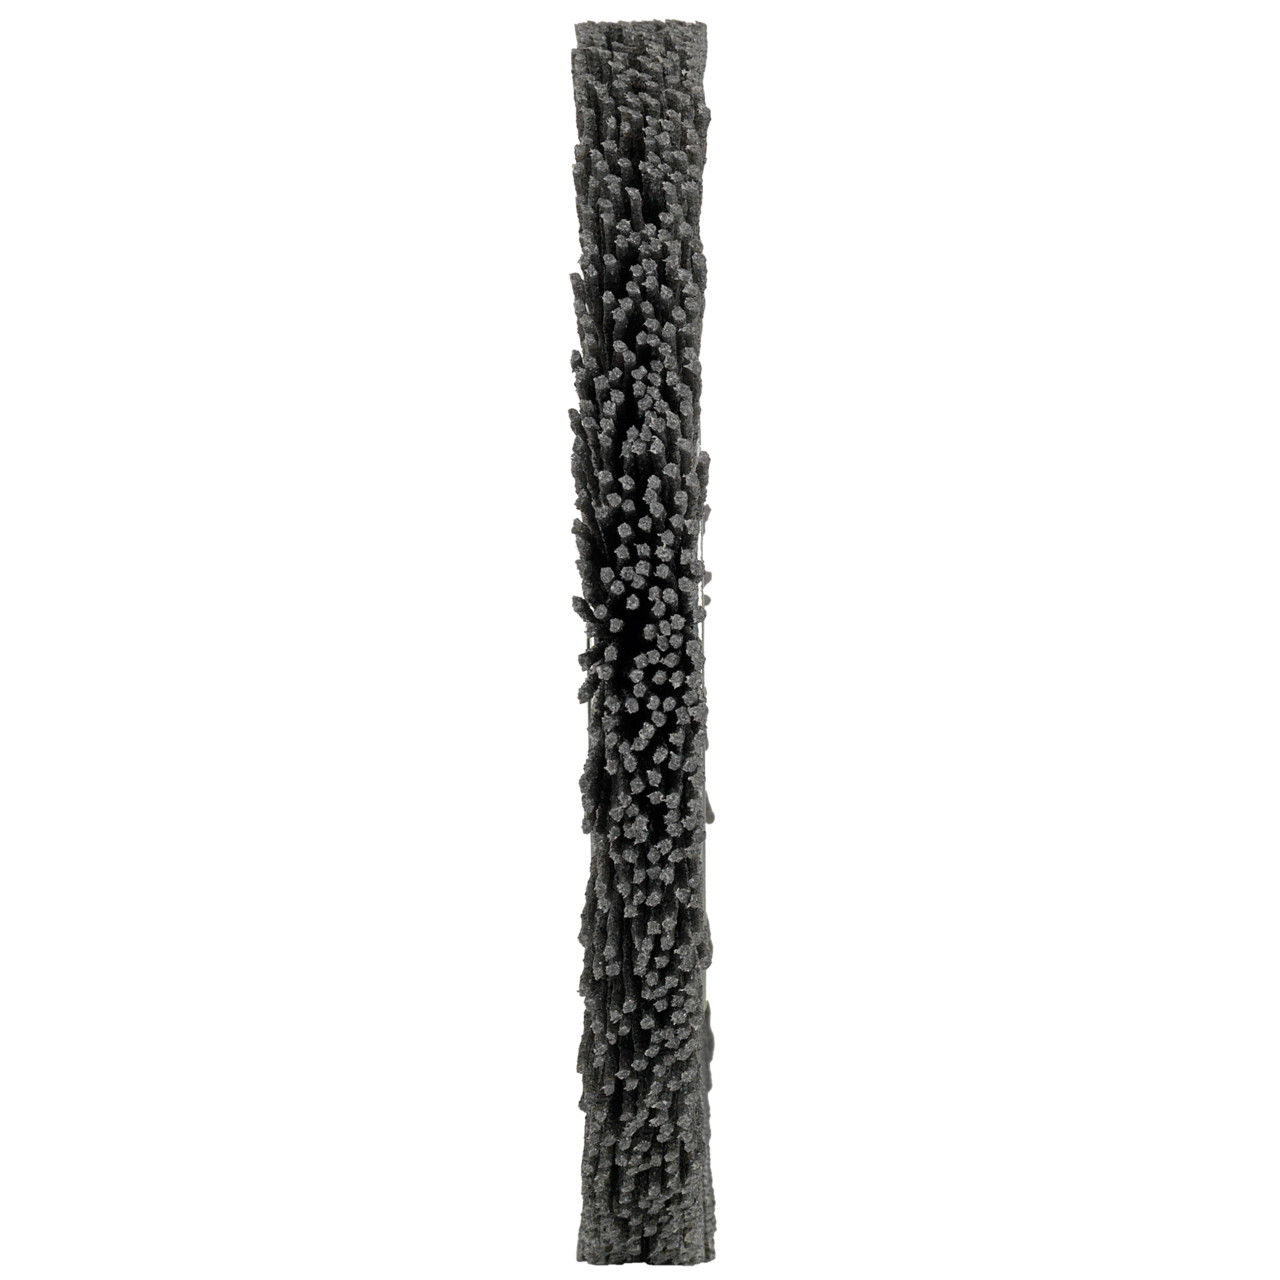 Tyrolit Round brushes DxWxLxH 200x13x43x50.8 For universal use, shape: 1RDK - (round brushes), Art. 227435